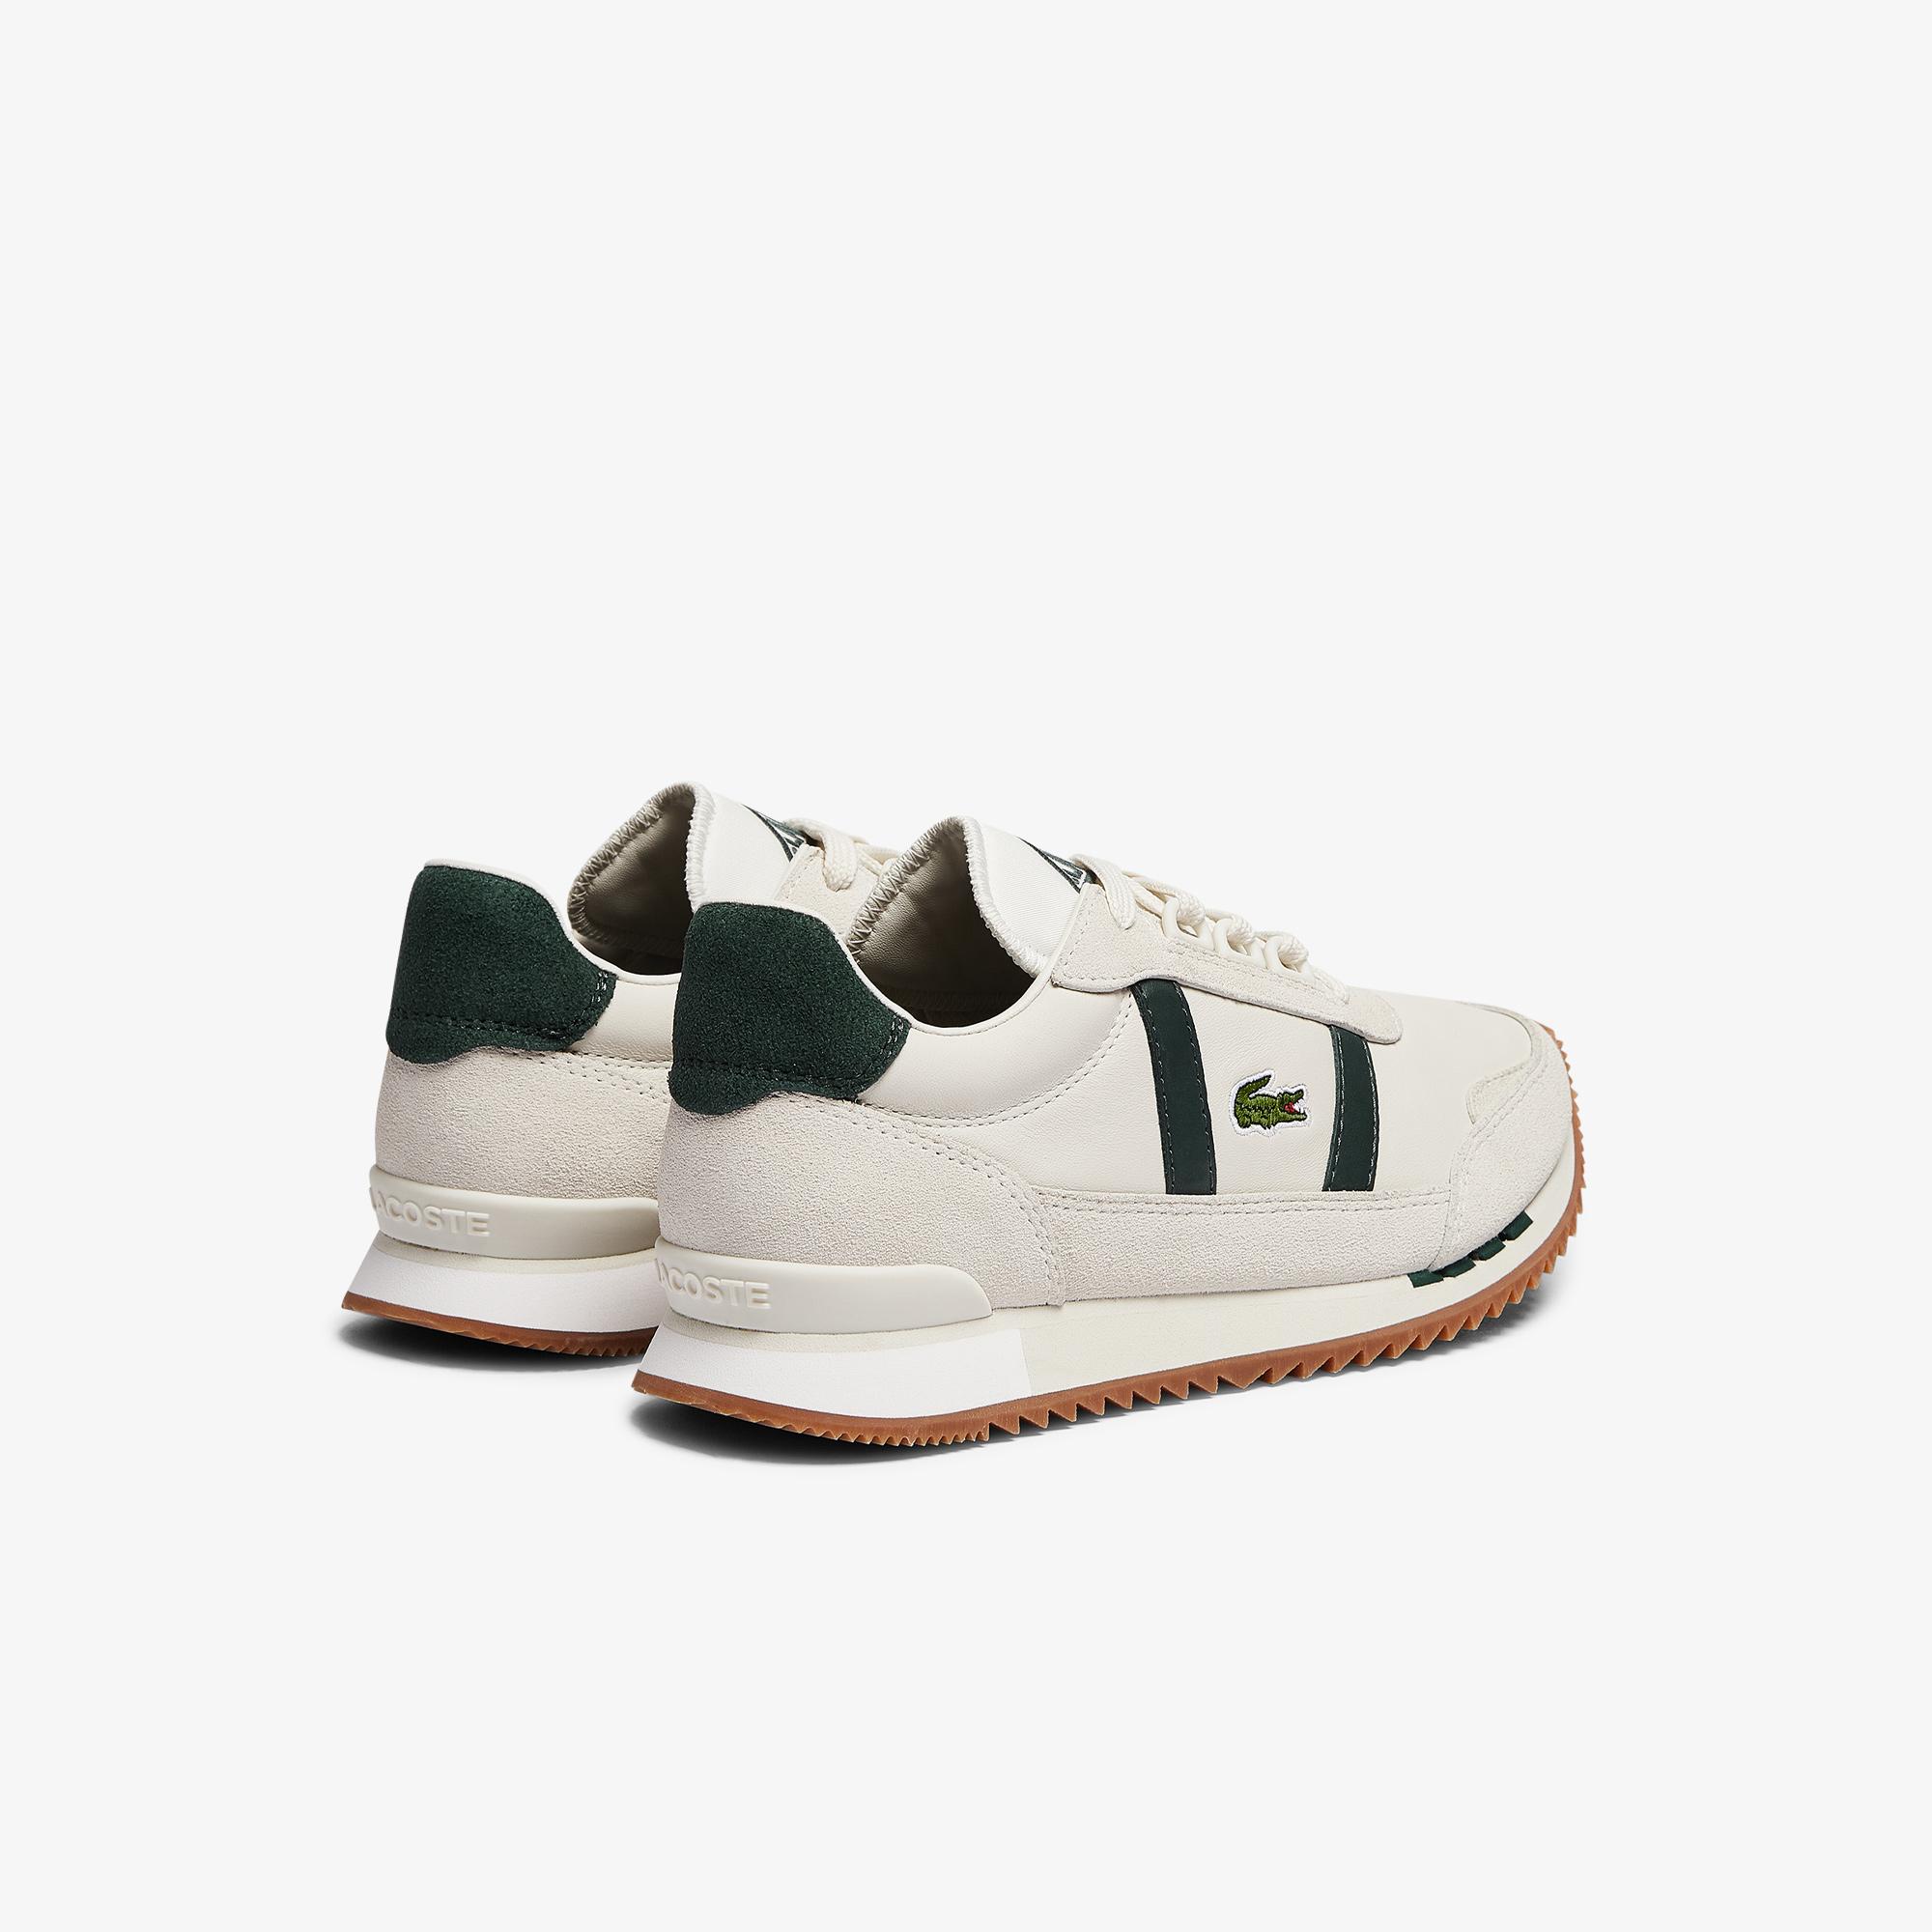 Lacoste Partner Retro 0721 1 Sfa Kadın Beyaz - Koyu Yeşil Sneaker. 4